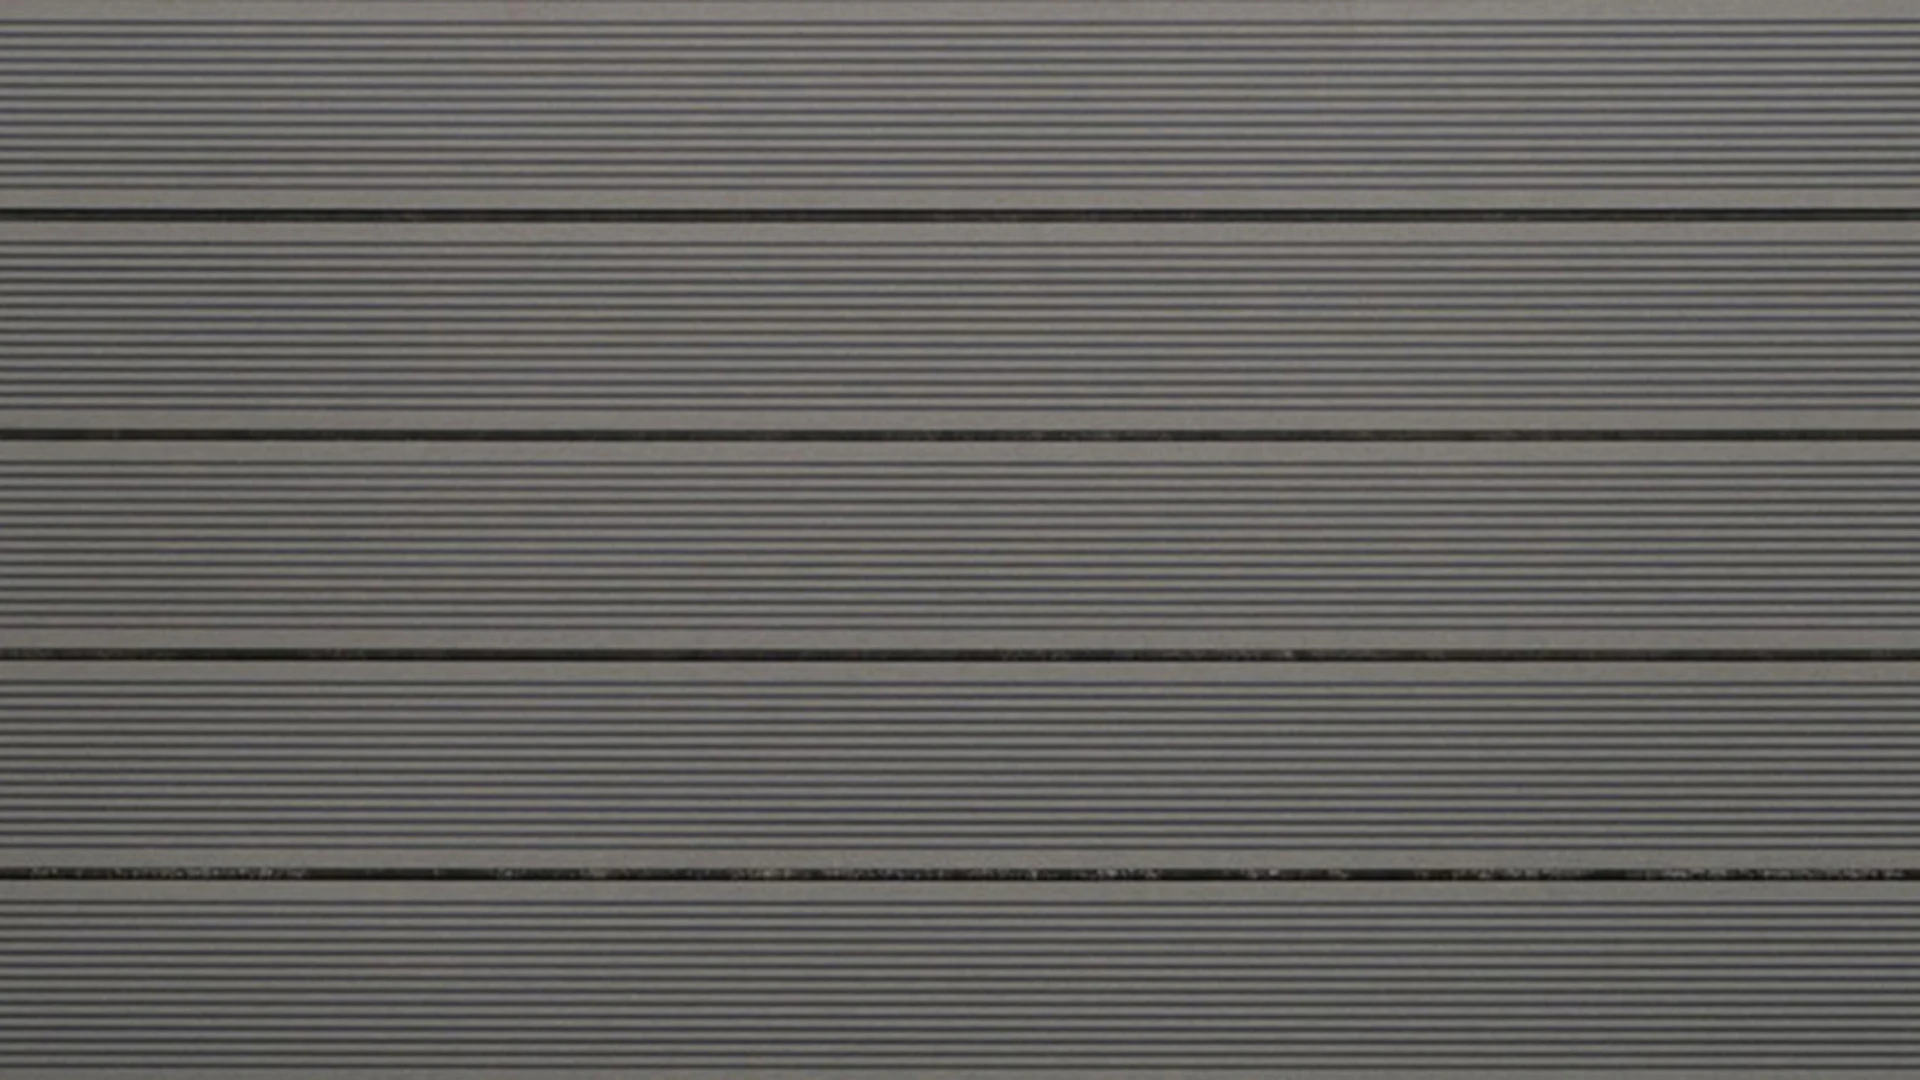 planeo pavimenti WPC decking board solido grigio chiaro - scanalato/scanalato